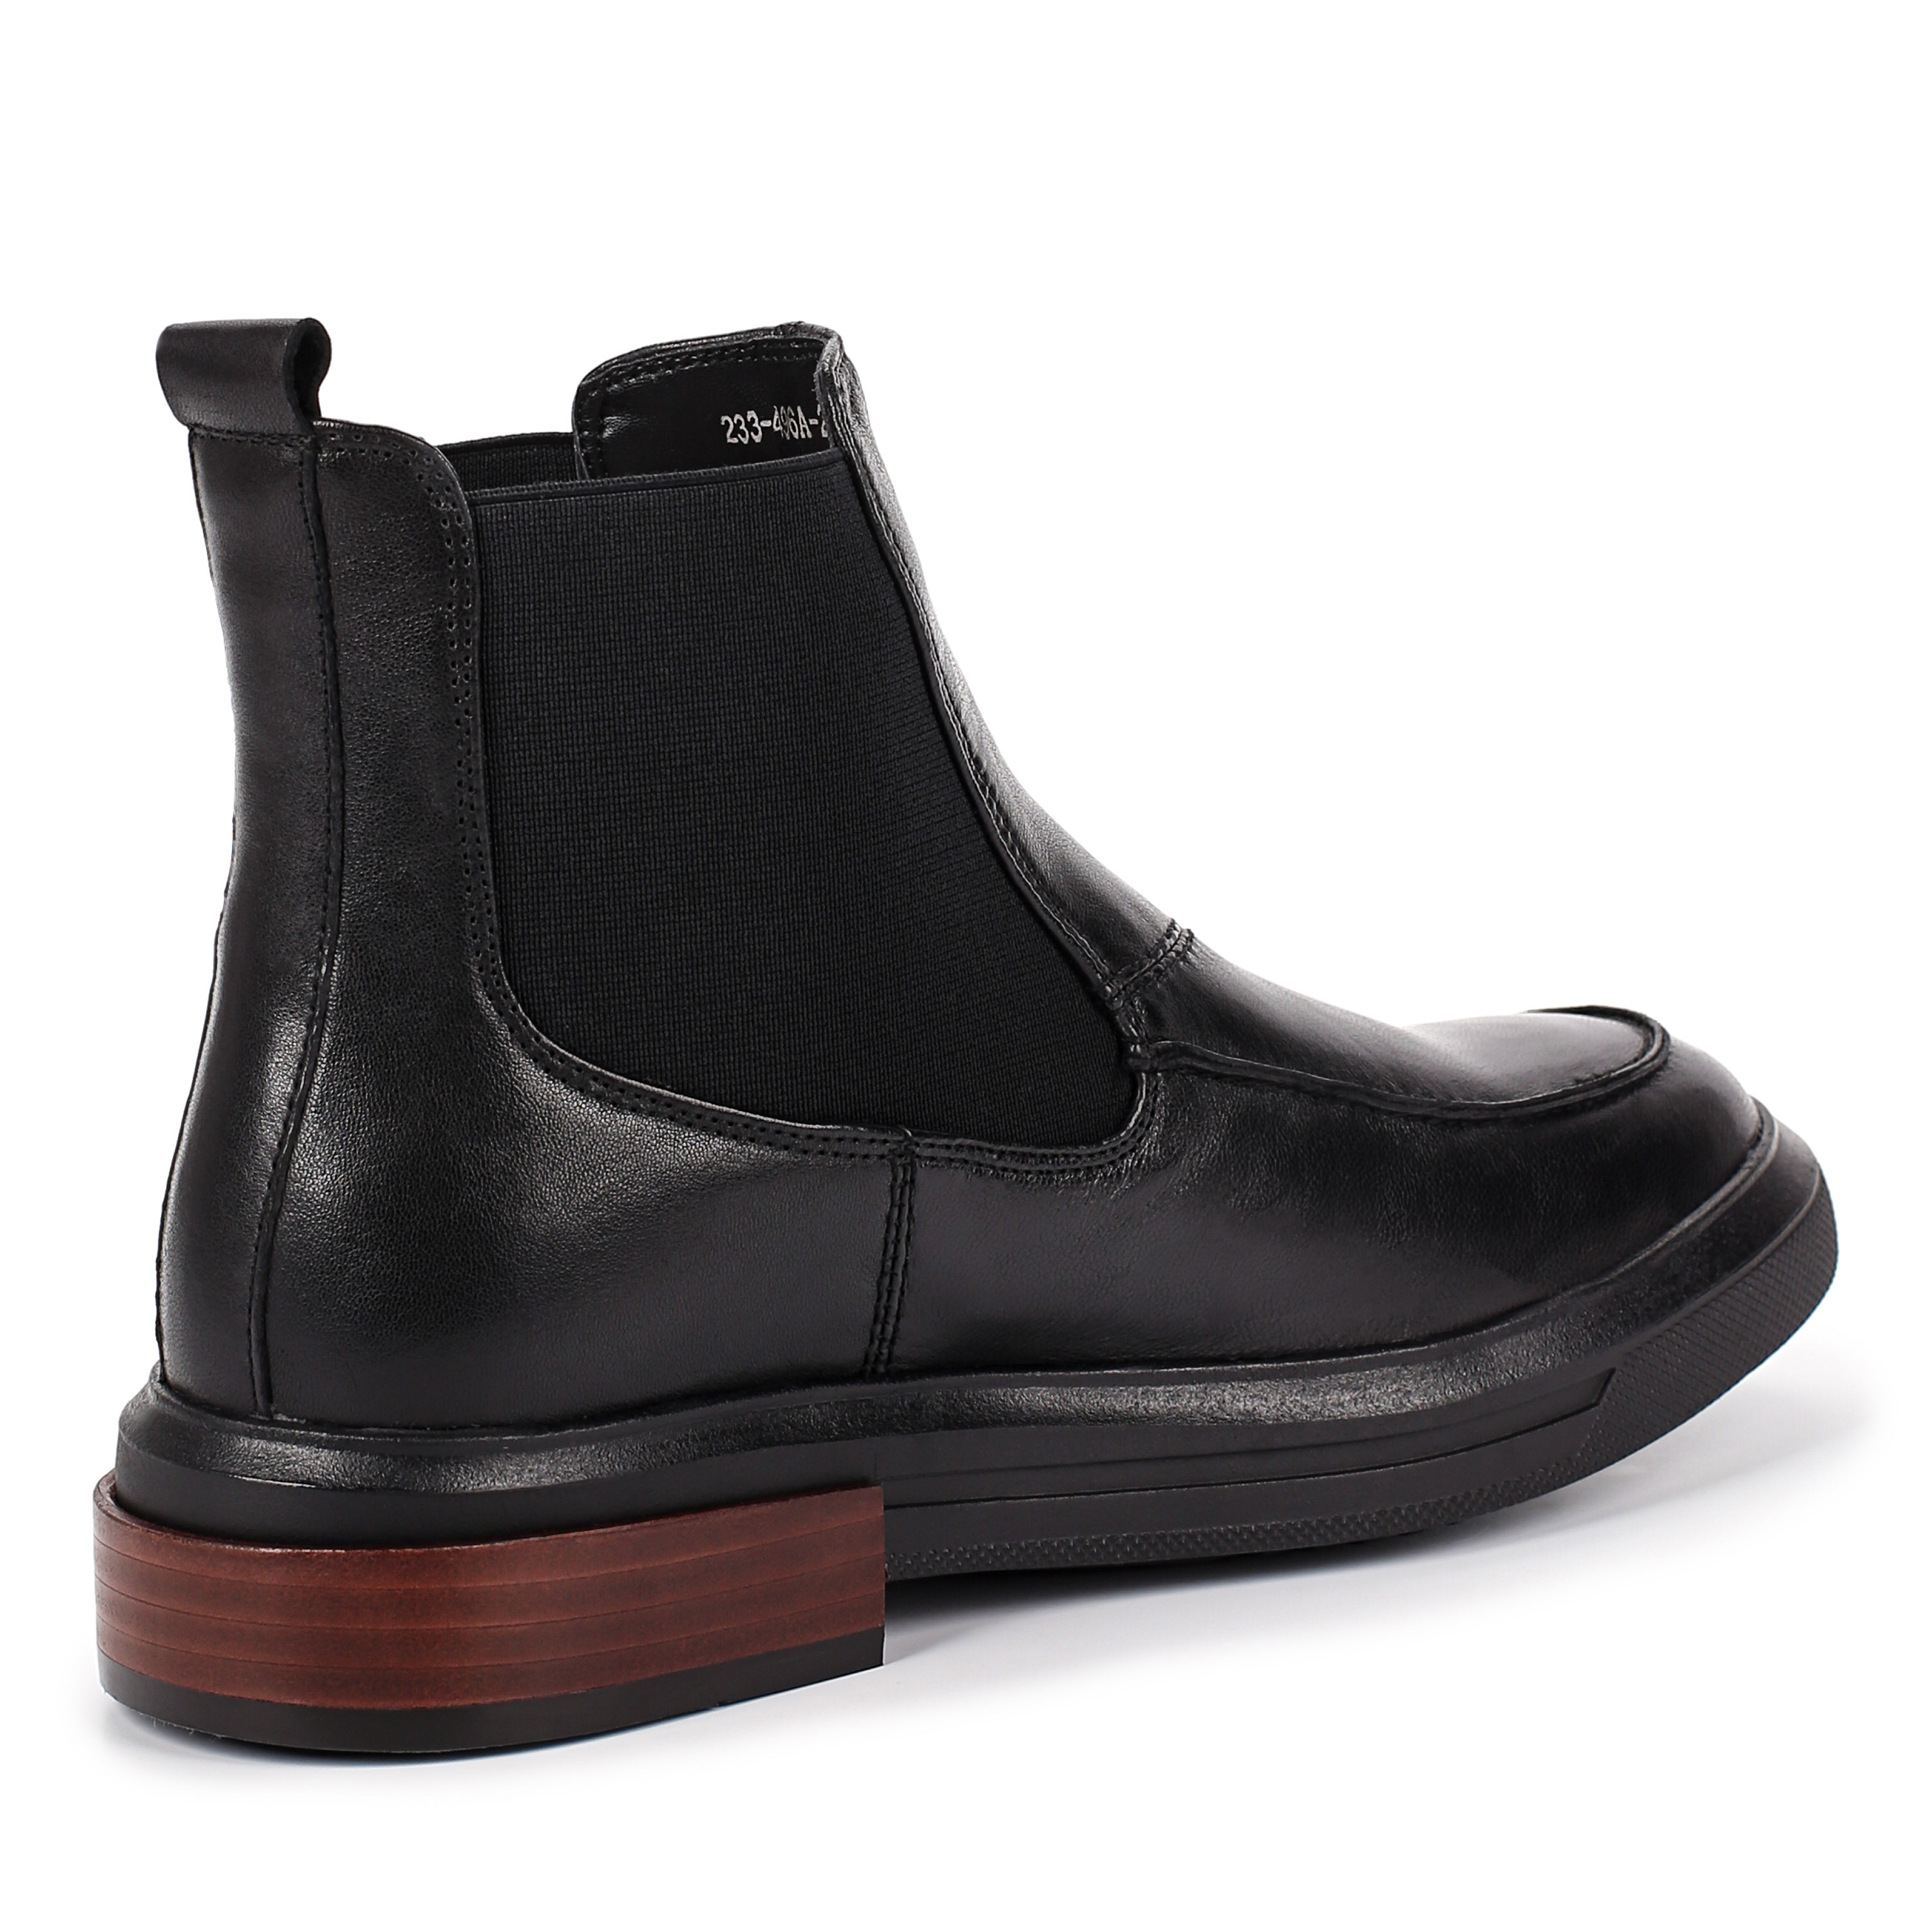 Ботинки Thomas Munz 233-496A-2102, цвет черный, размер 36 - фото 3